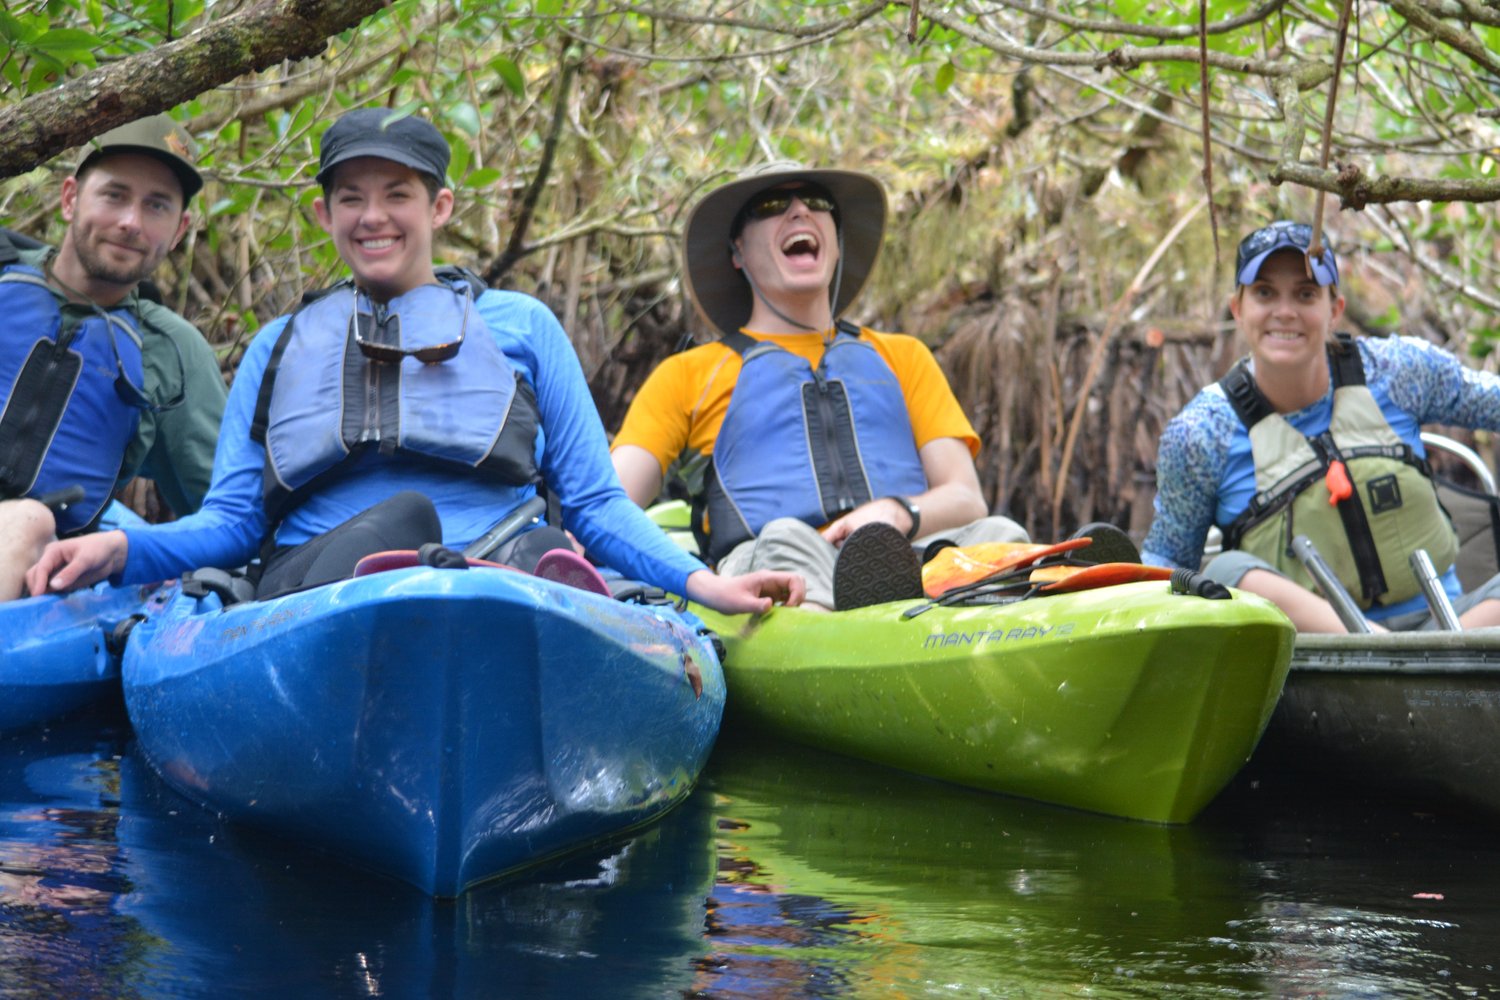 Everglades City: Ecoturismo, paseos en kayak, pesca y diversión